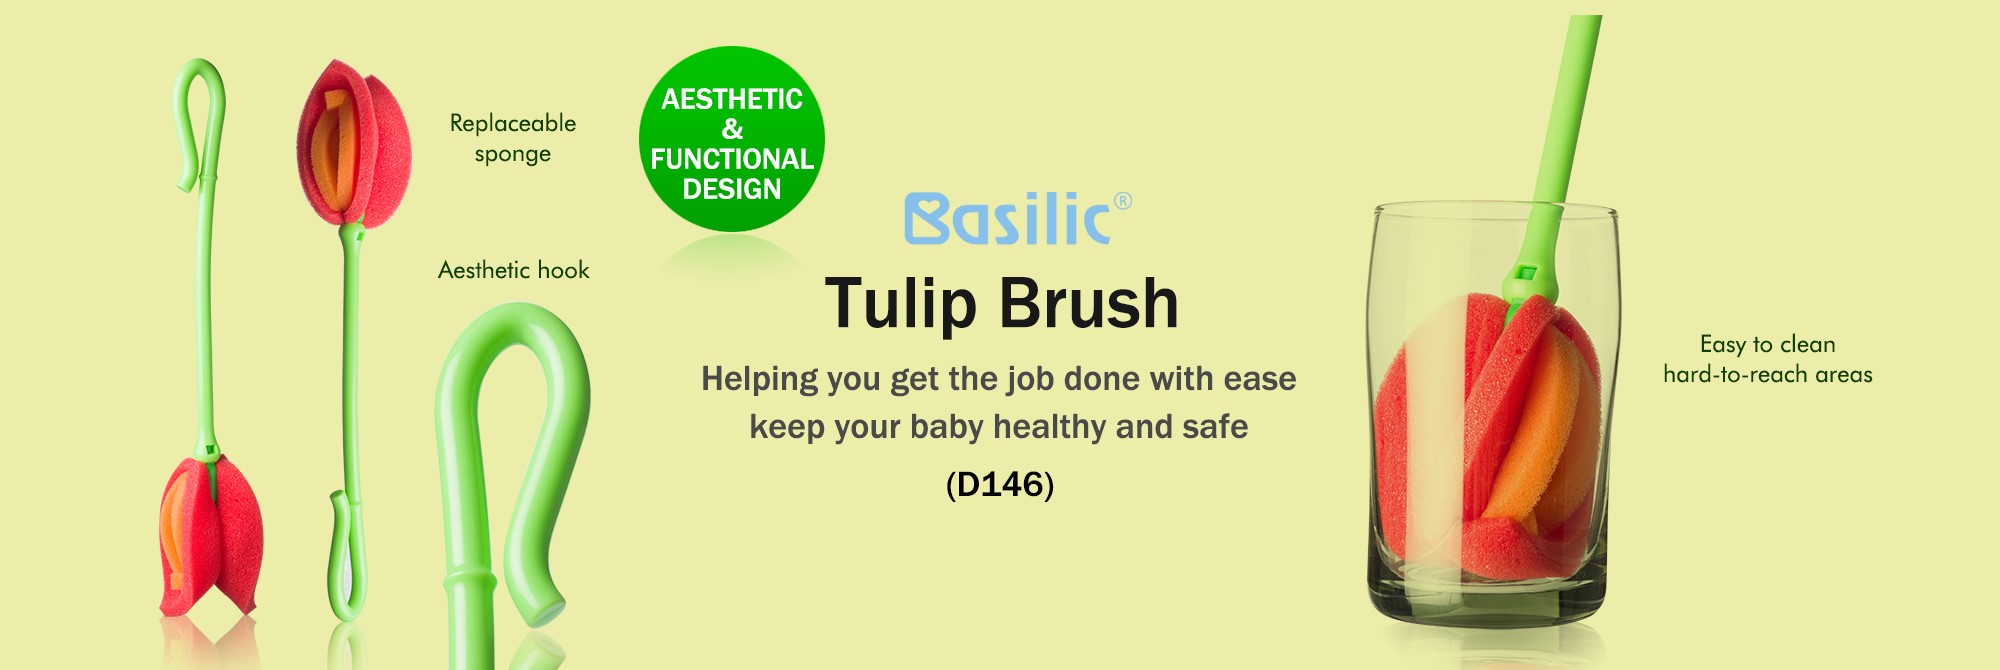 Basilic tulip brush (D146)